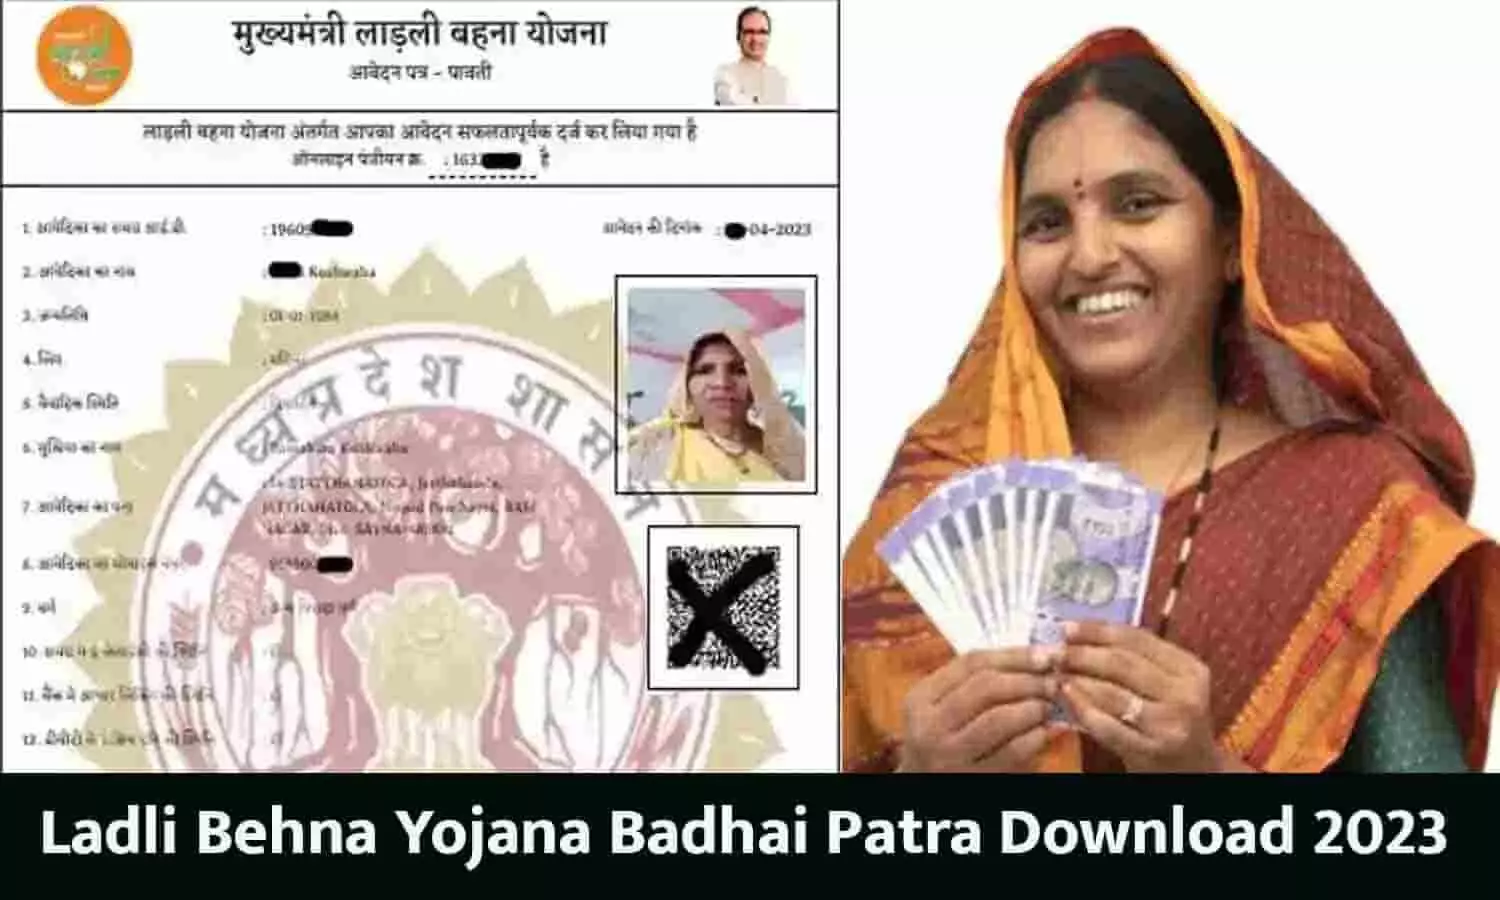 Ladli Behna Yojana Ka Badhai Patra Download Kaise Kare: लाडली बहना योजना का बधाई पत्र कैसे डाउनलोड करे 2023